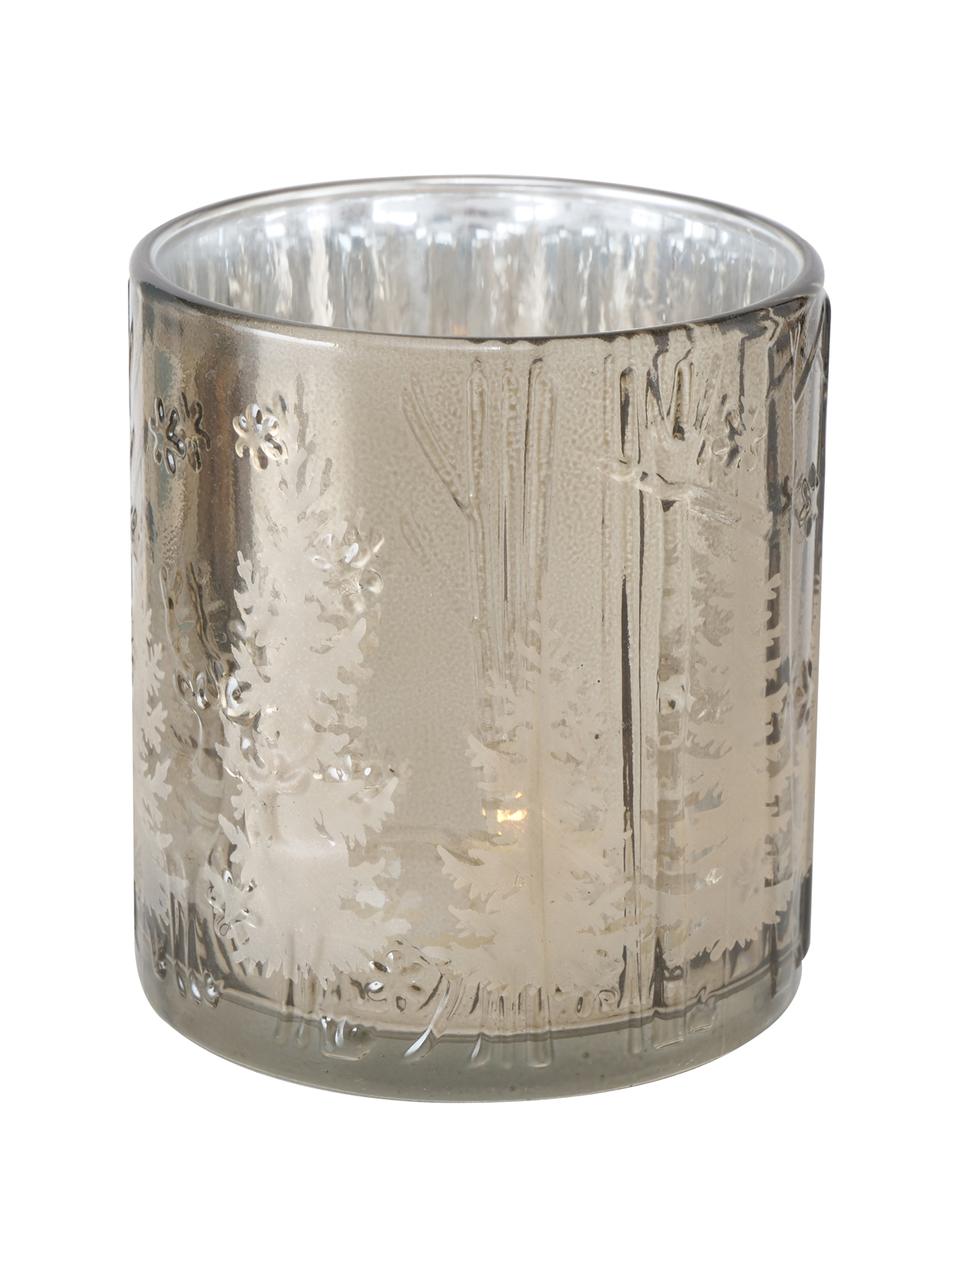 Teelicht-Set Skage, 2-tlg., Glas, lackiert, Silberfarben, Grau, glänzend, Ø 7 x H 8 cm